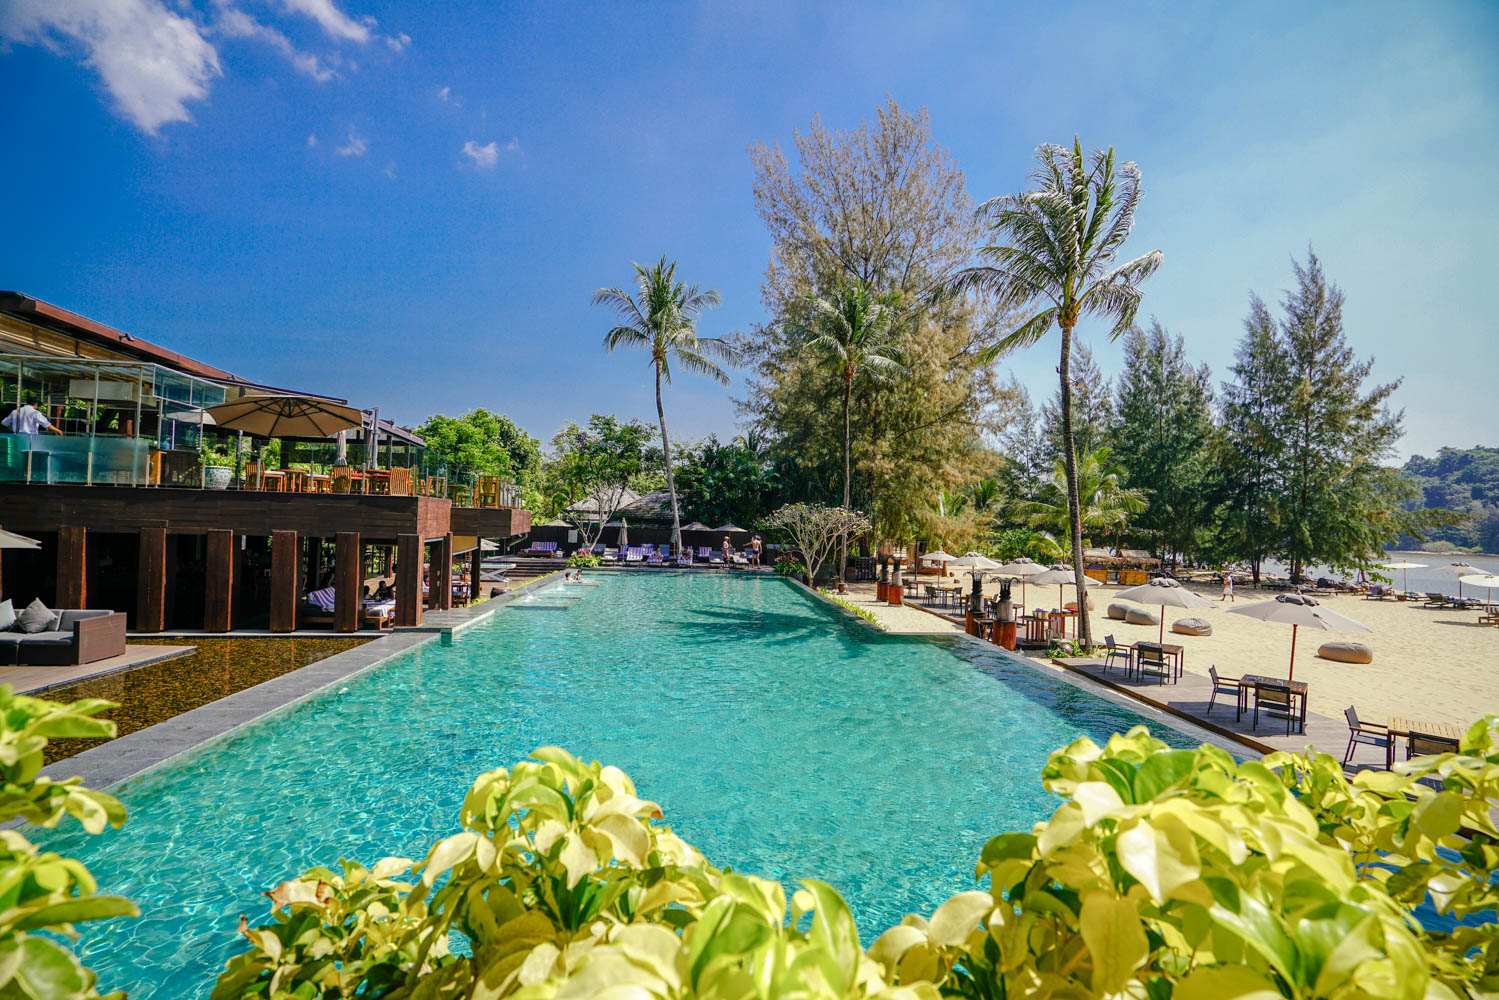 โรงแรม kalima resort & spa phuket resort spa phuket thailand